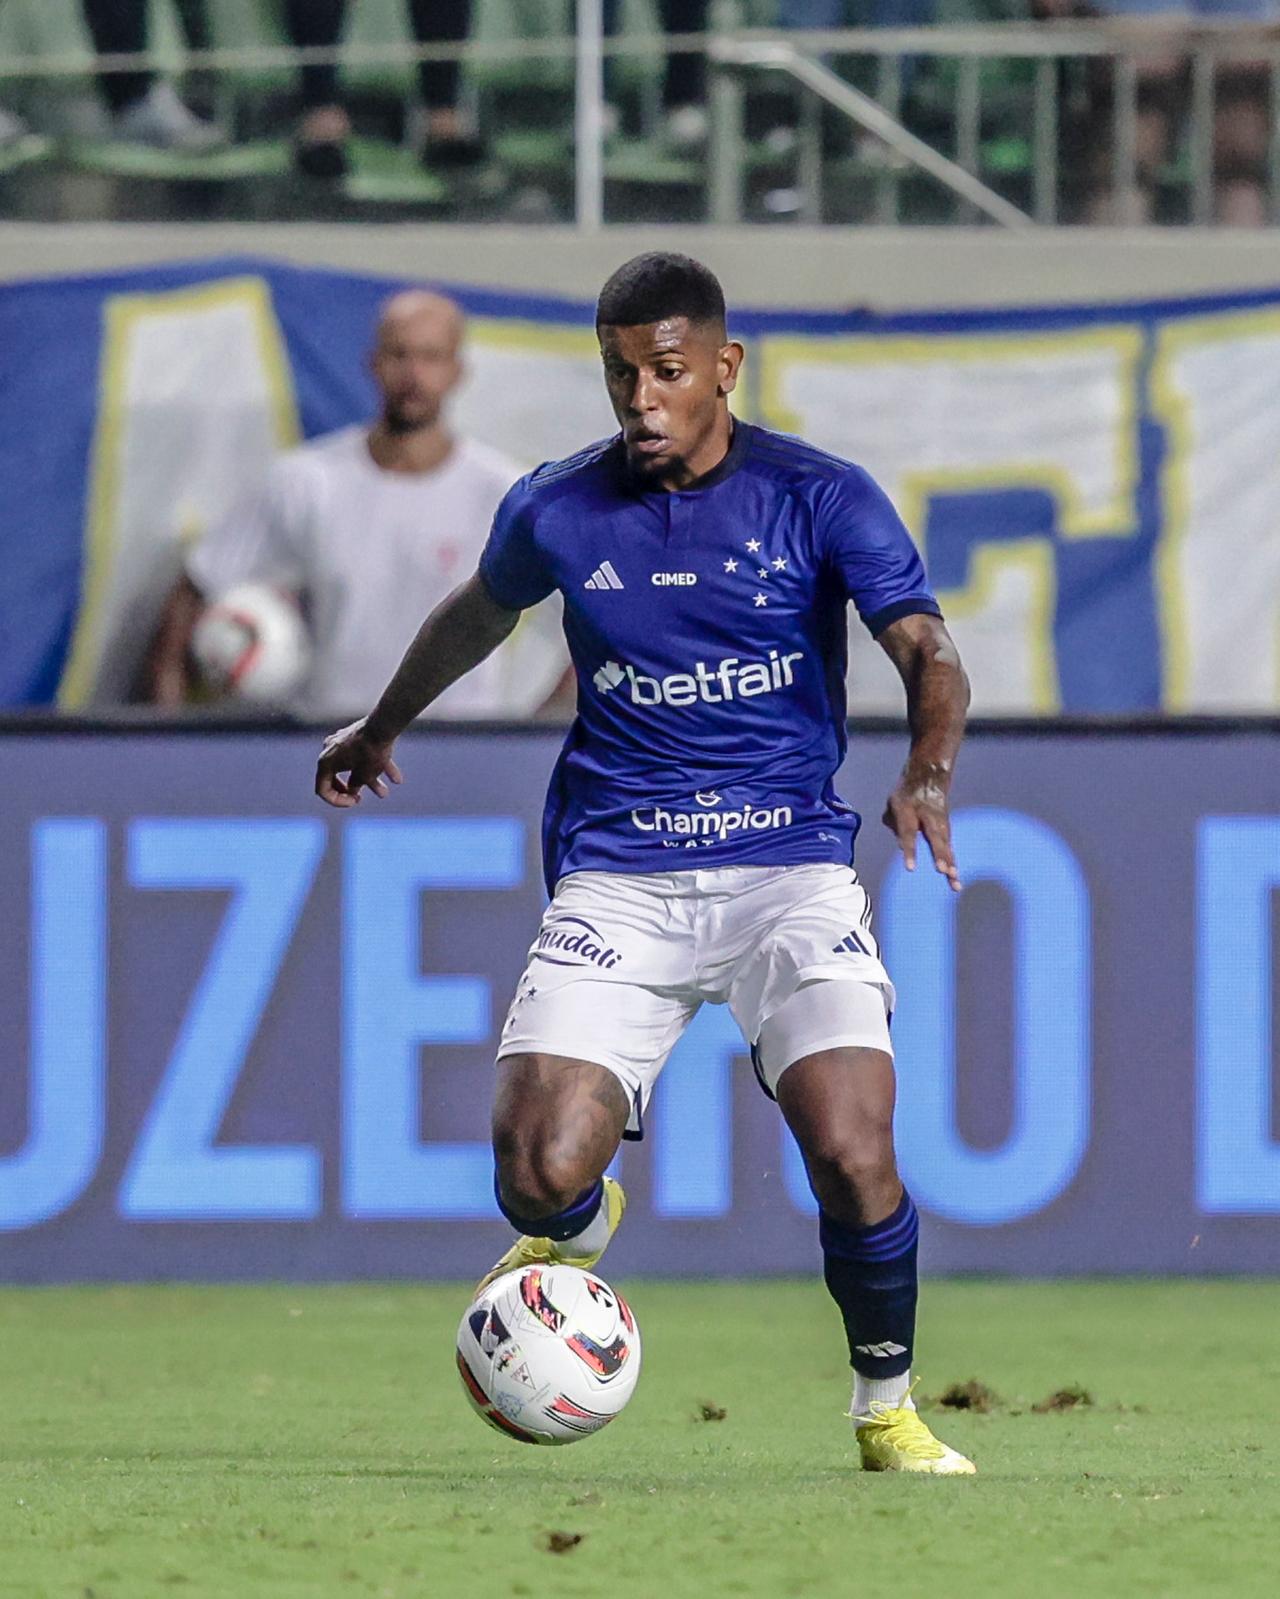 Cruzeiro anuncia a contratação do lateral Wesley Gasolina - Lance!